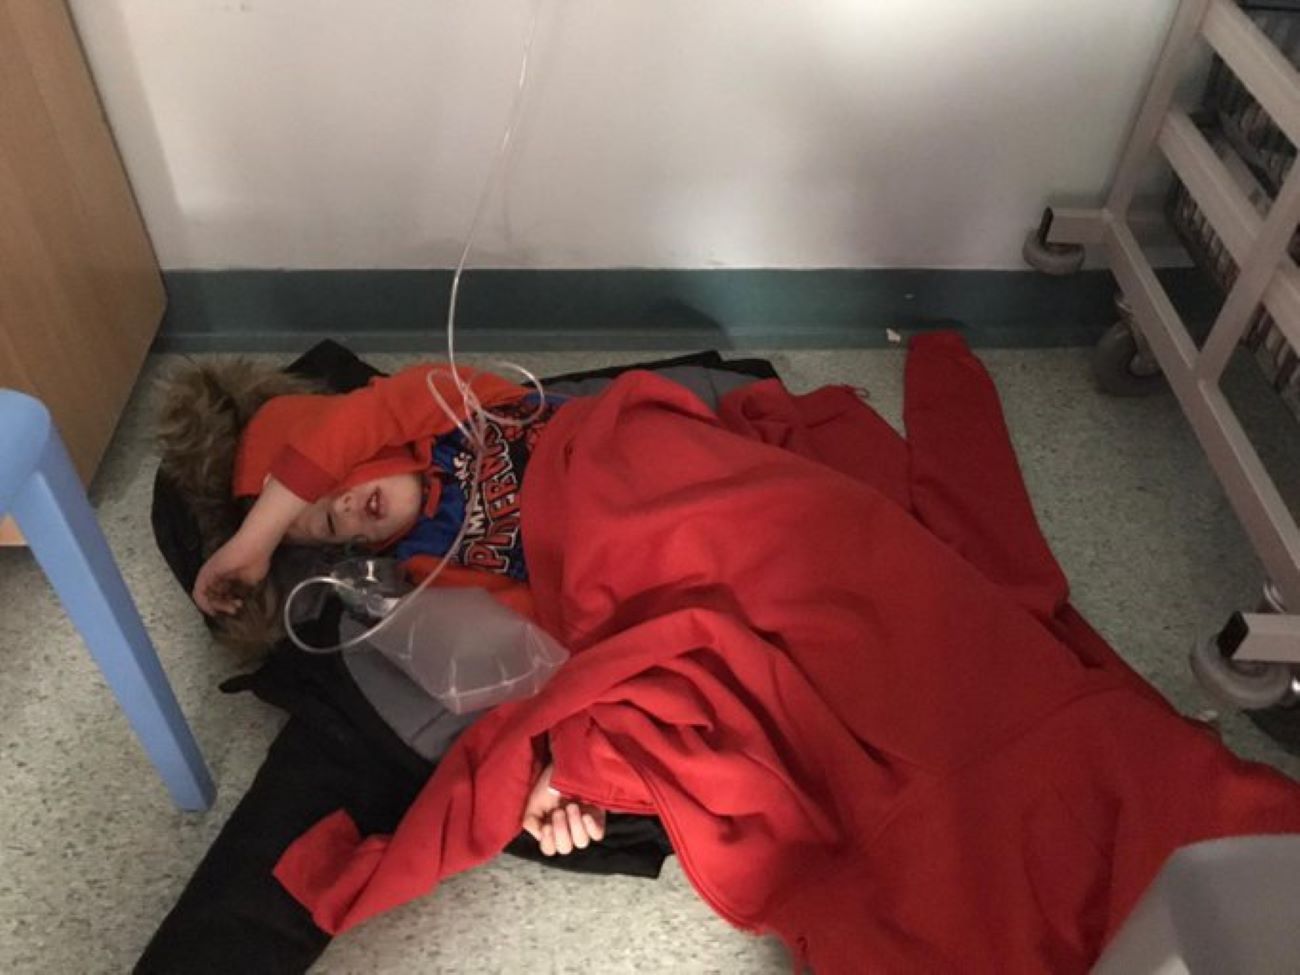 Jack durmiendo en el suelo del hospital / Twitter